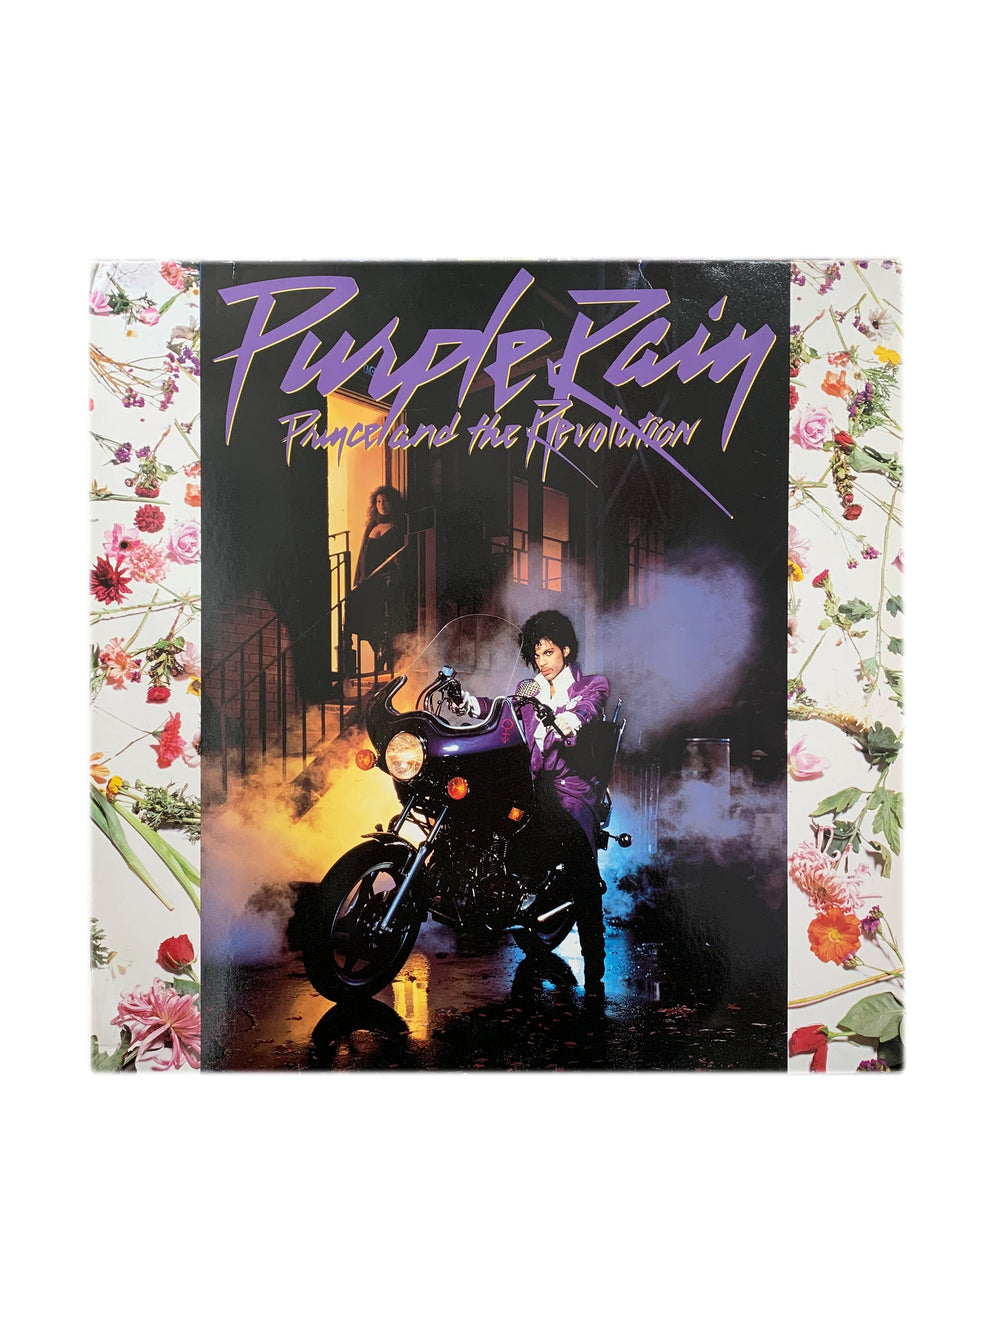 Prince – & The Revolution - Purple Rain Vinyl LP Album Poster UK & Europe (Lake Inner)Preloved: 1984